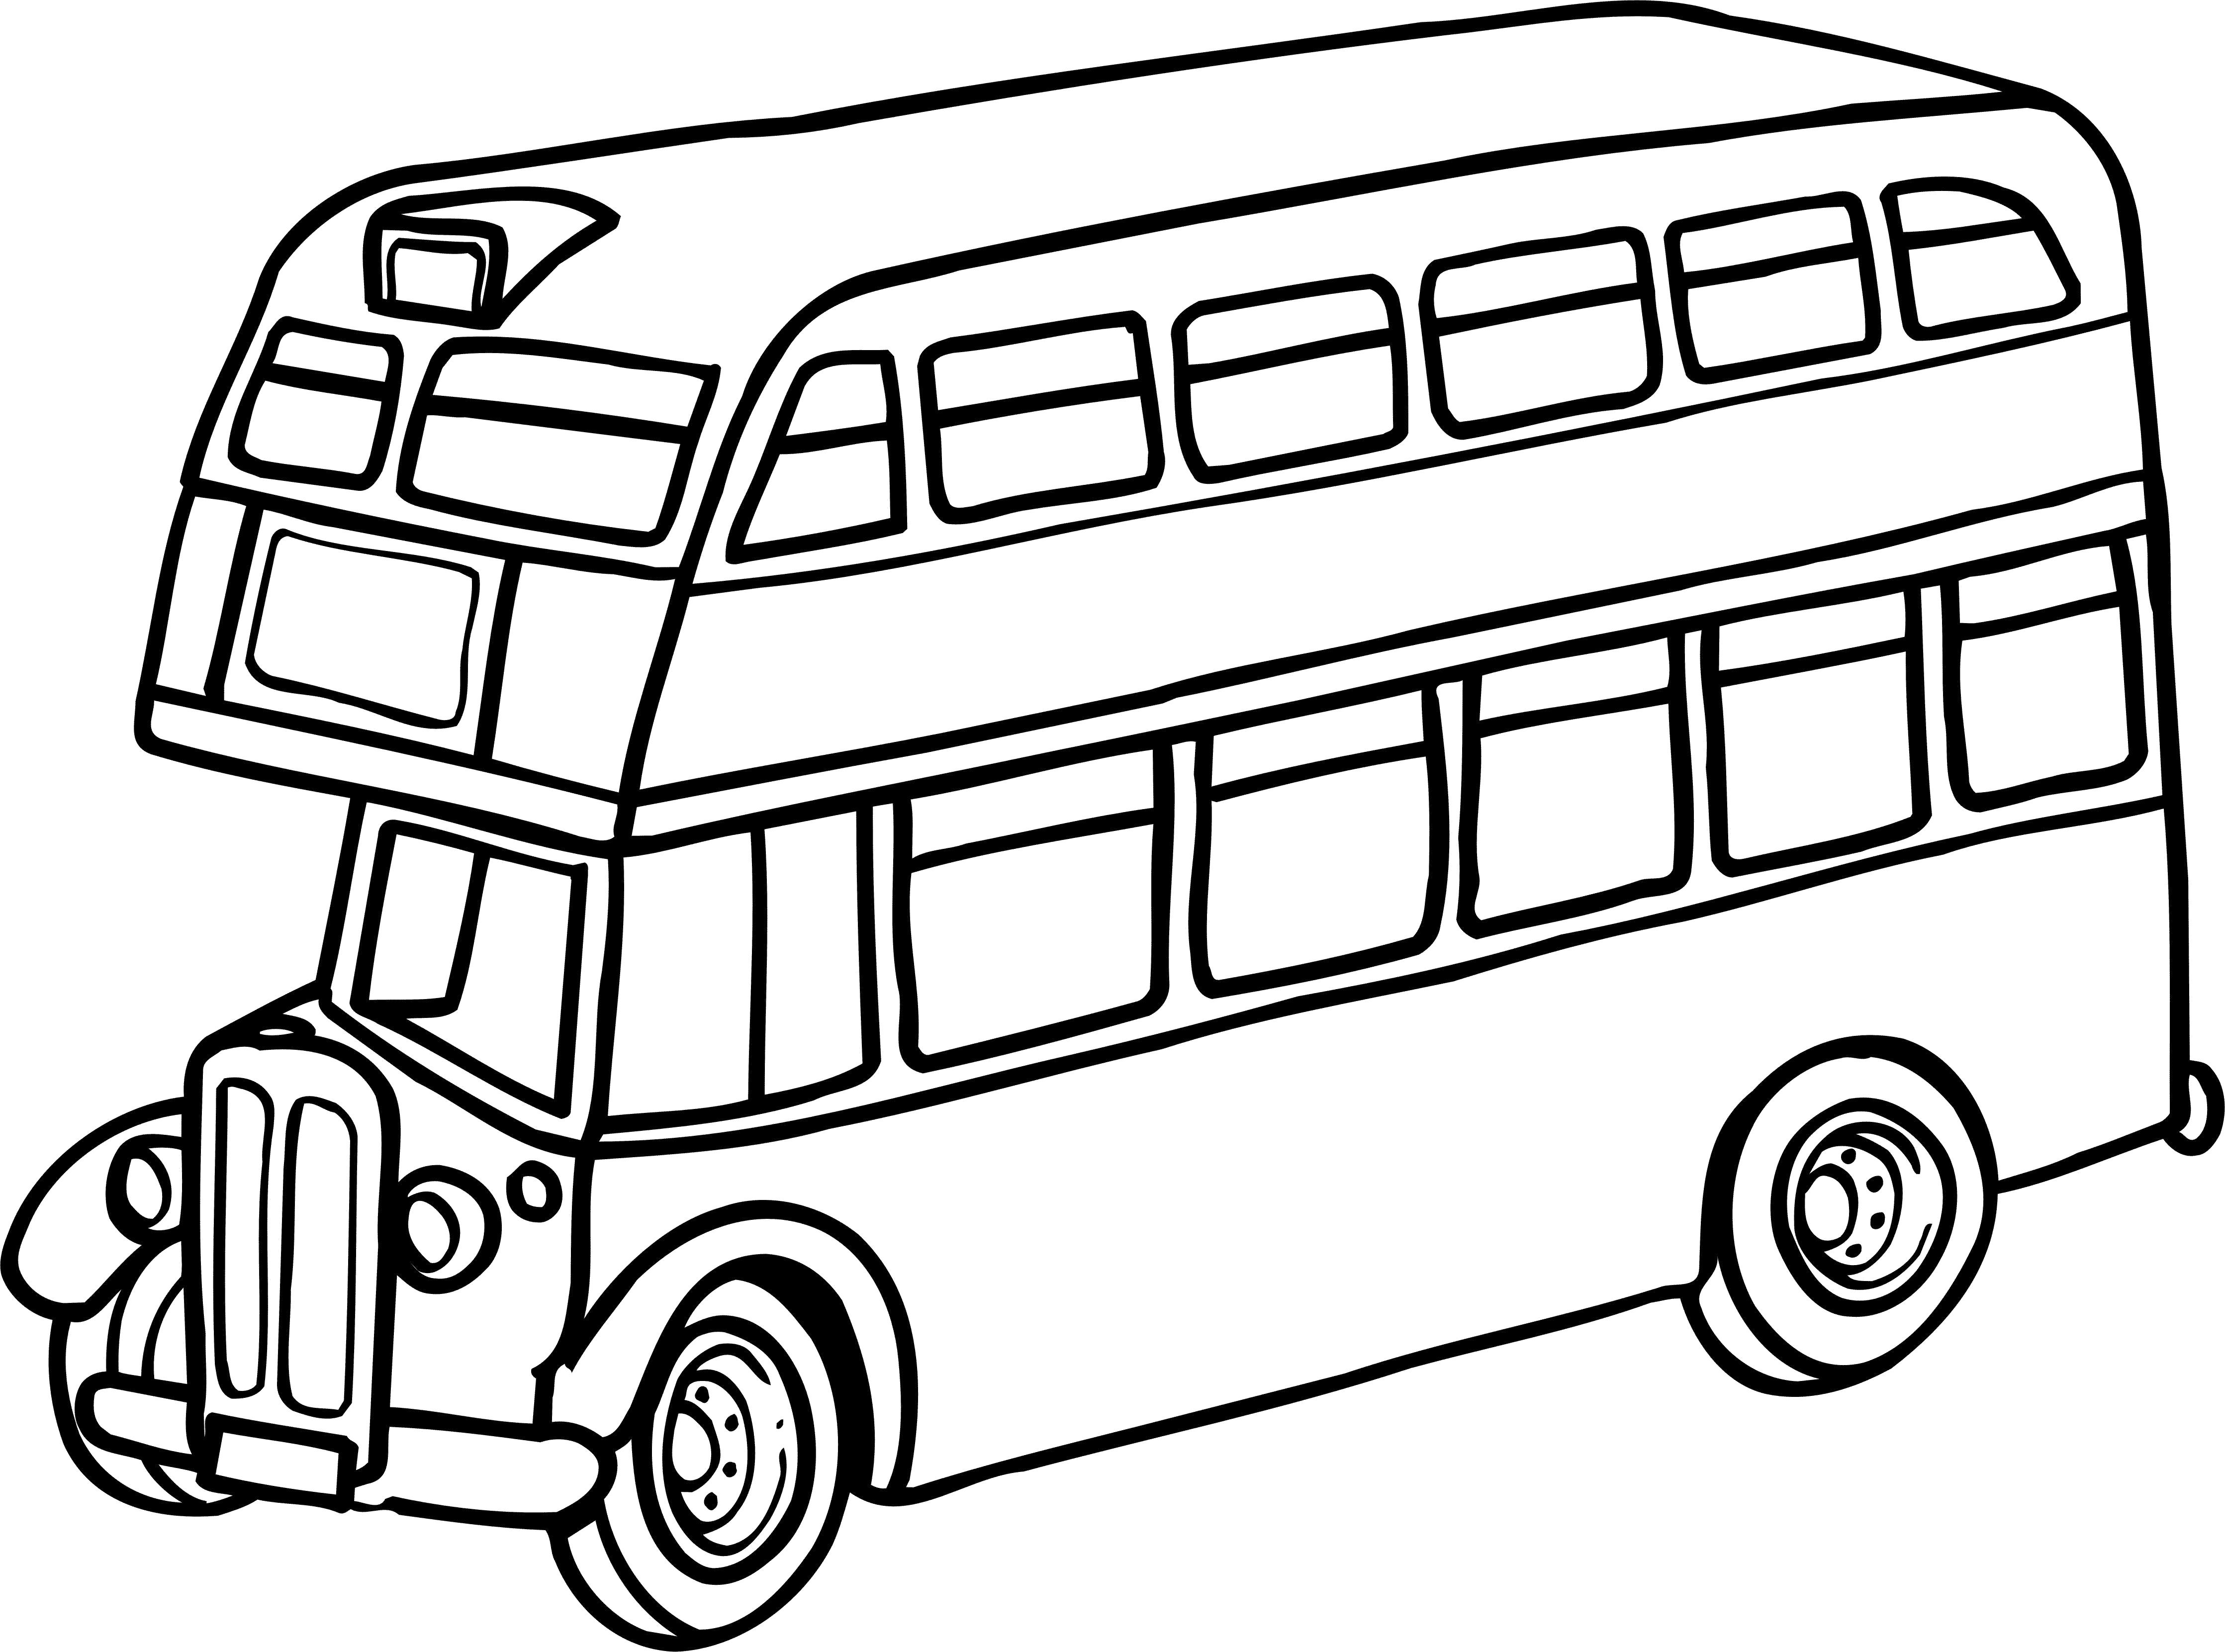 Раскраски автобус: раскраски - скачать или распечатать бесплатно